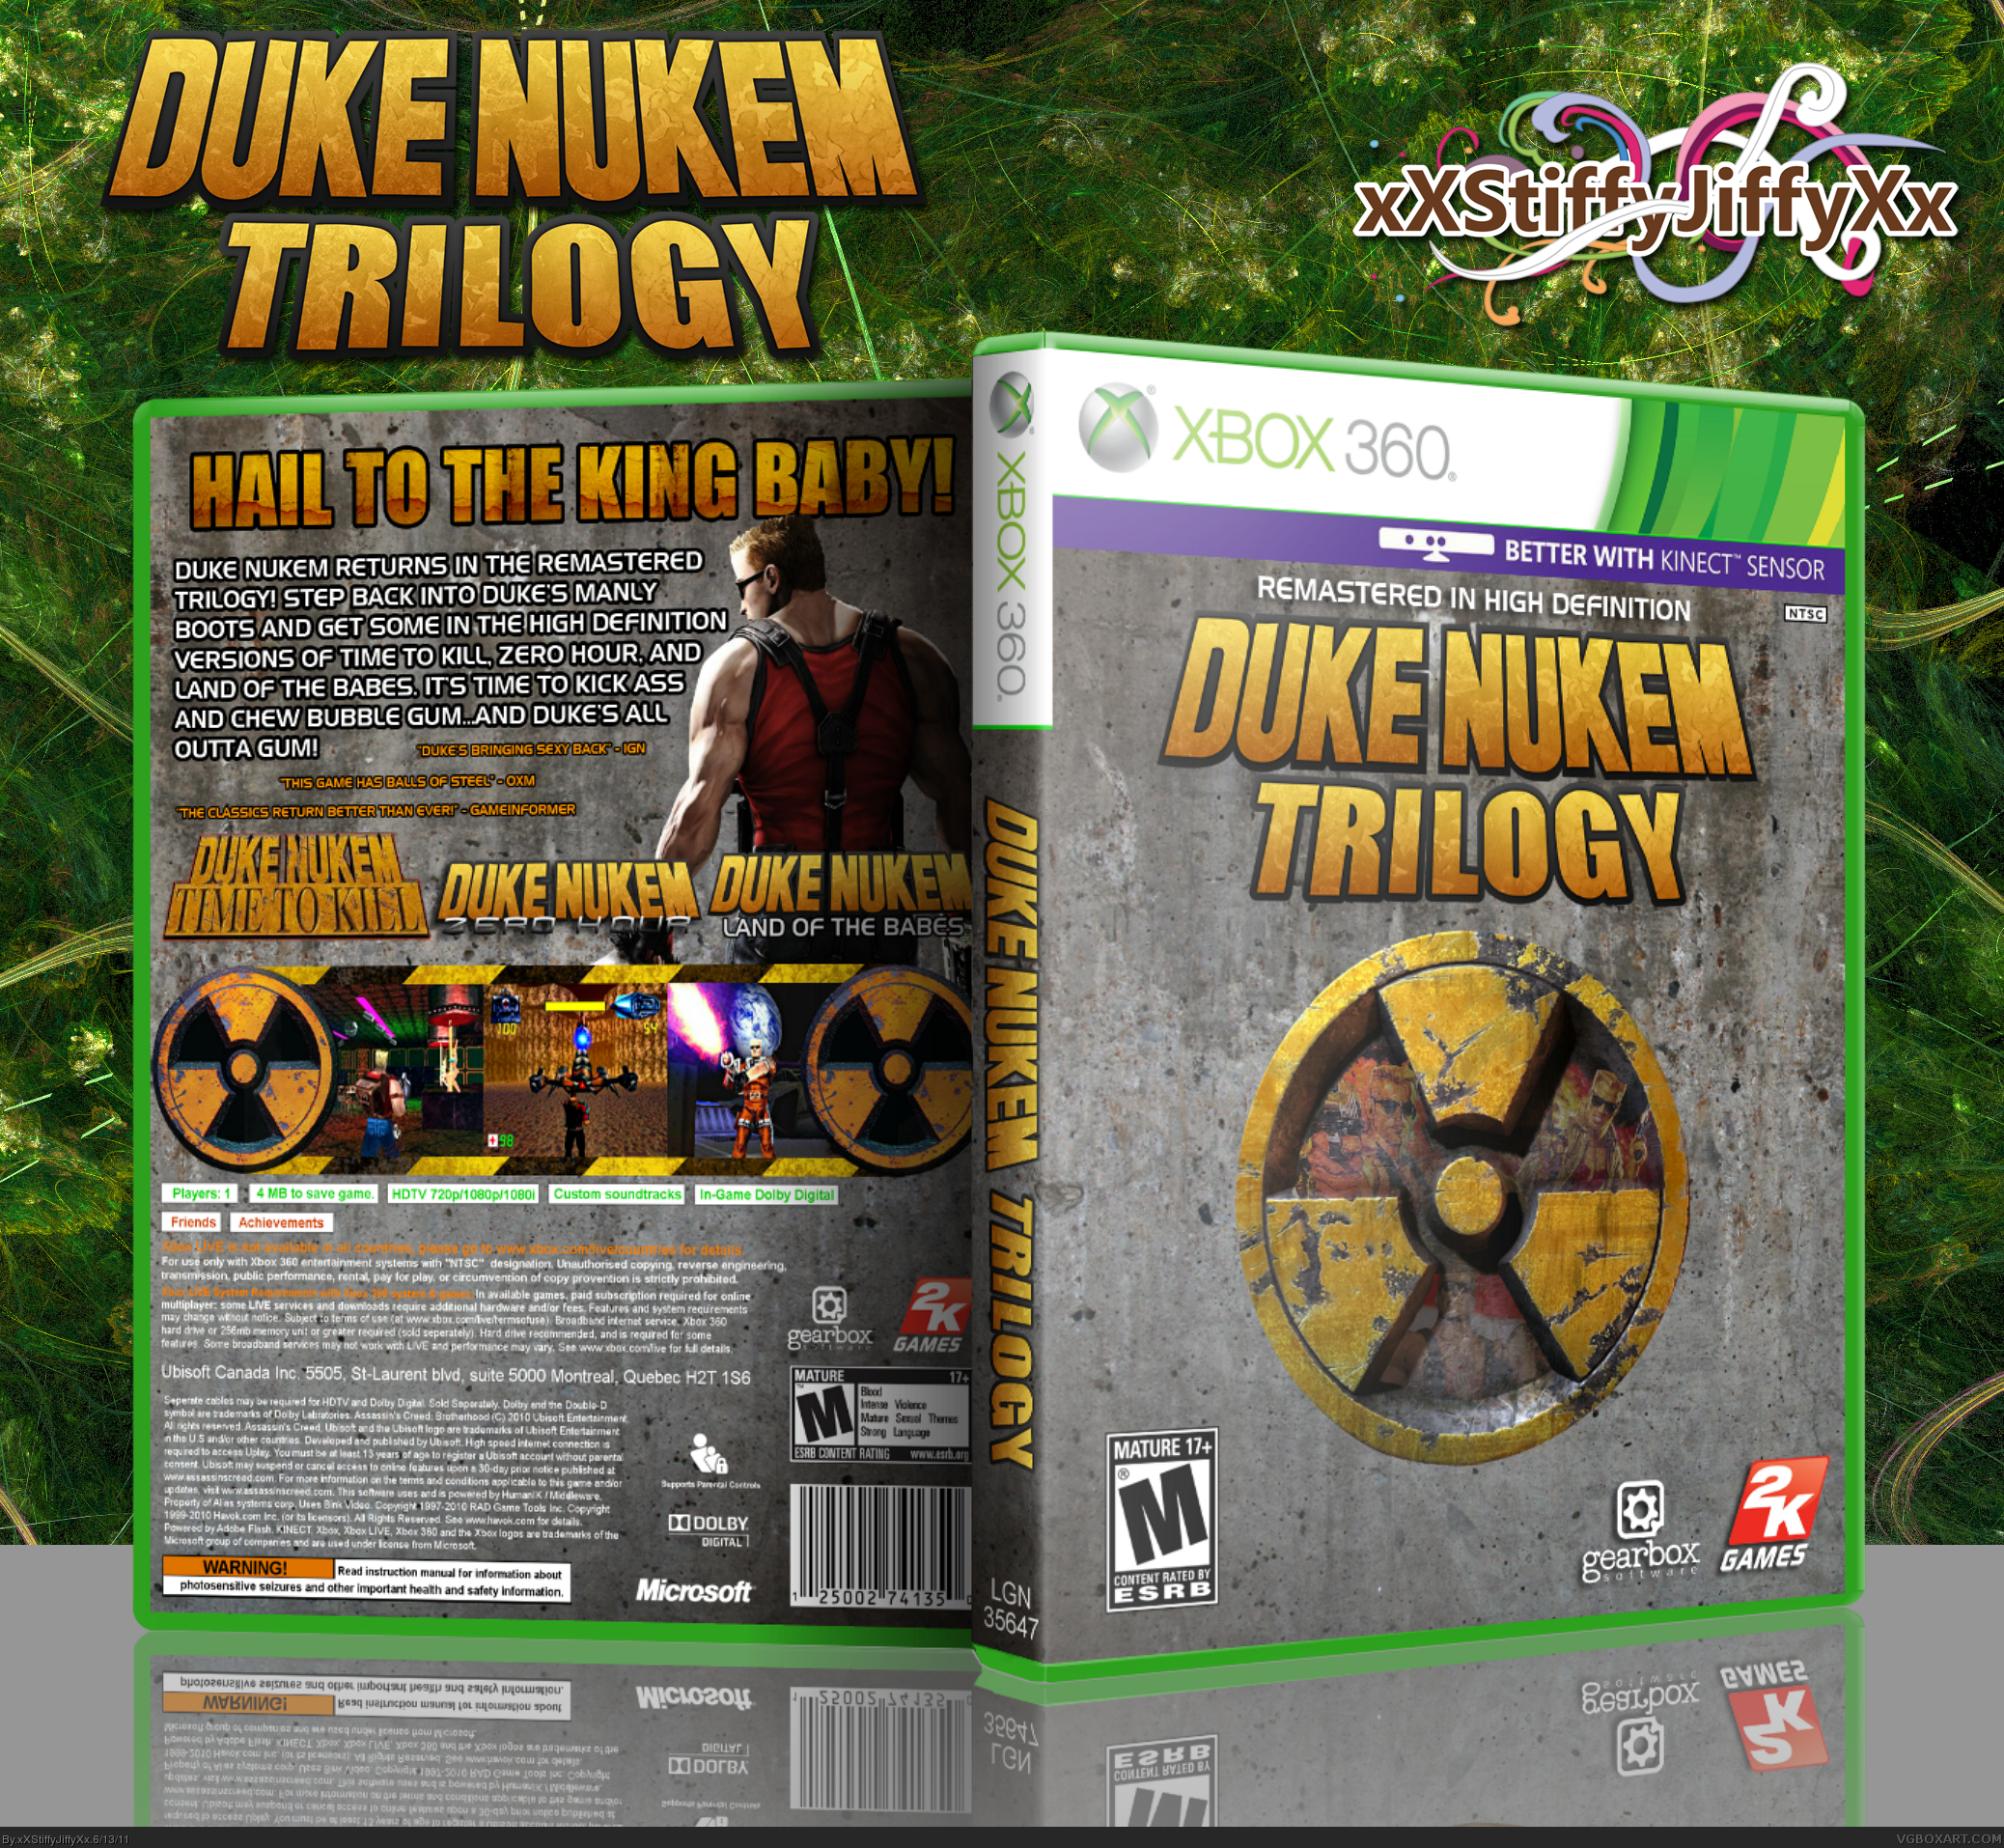 Duke Nukem Trilogy box cover